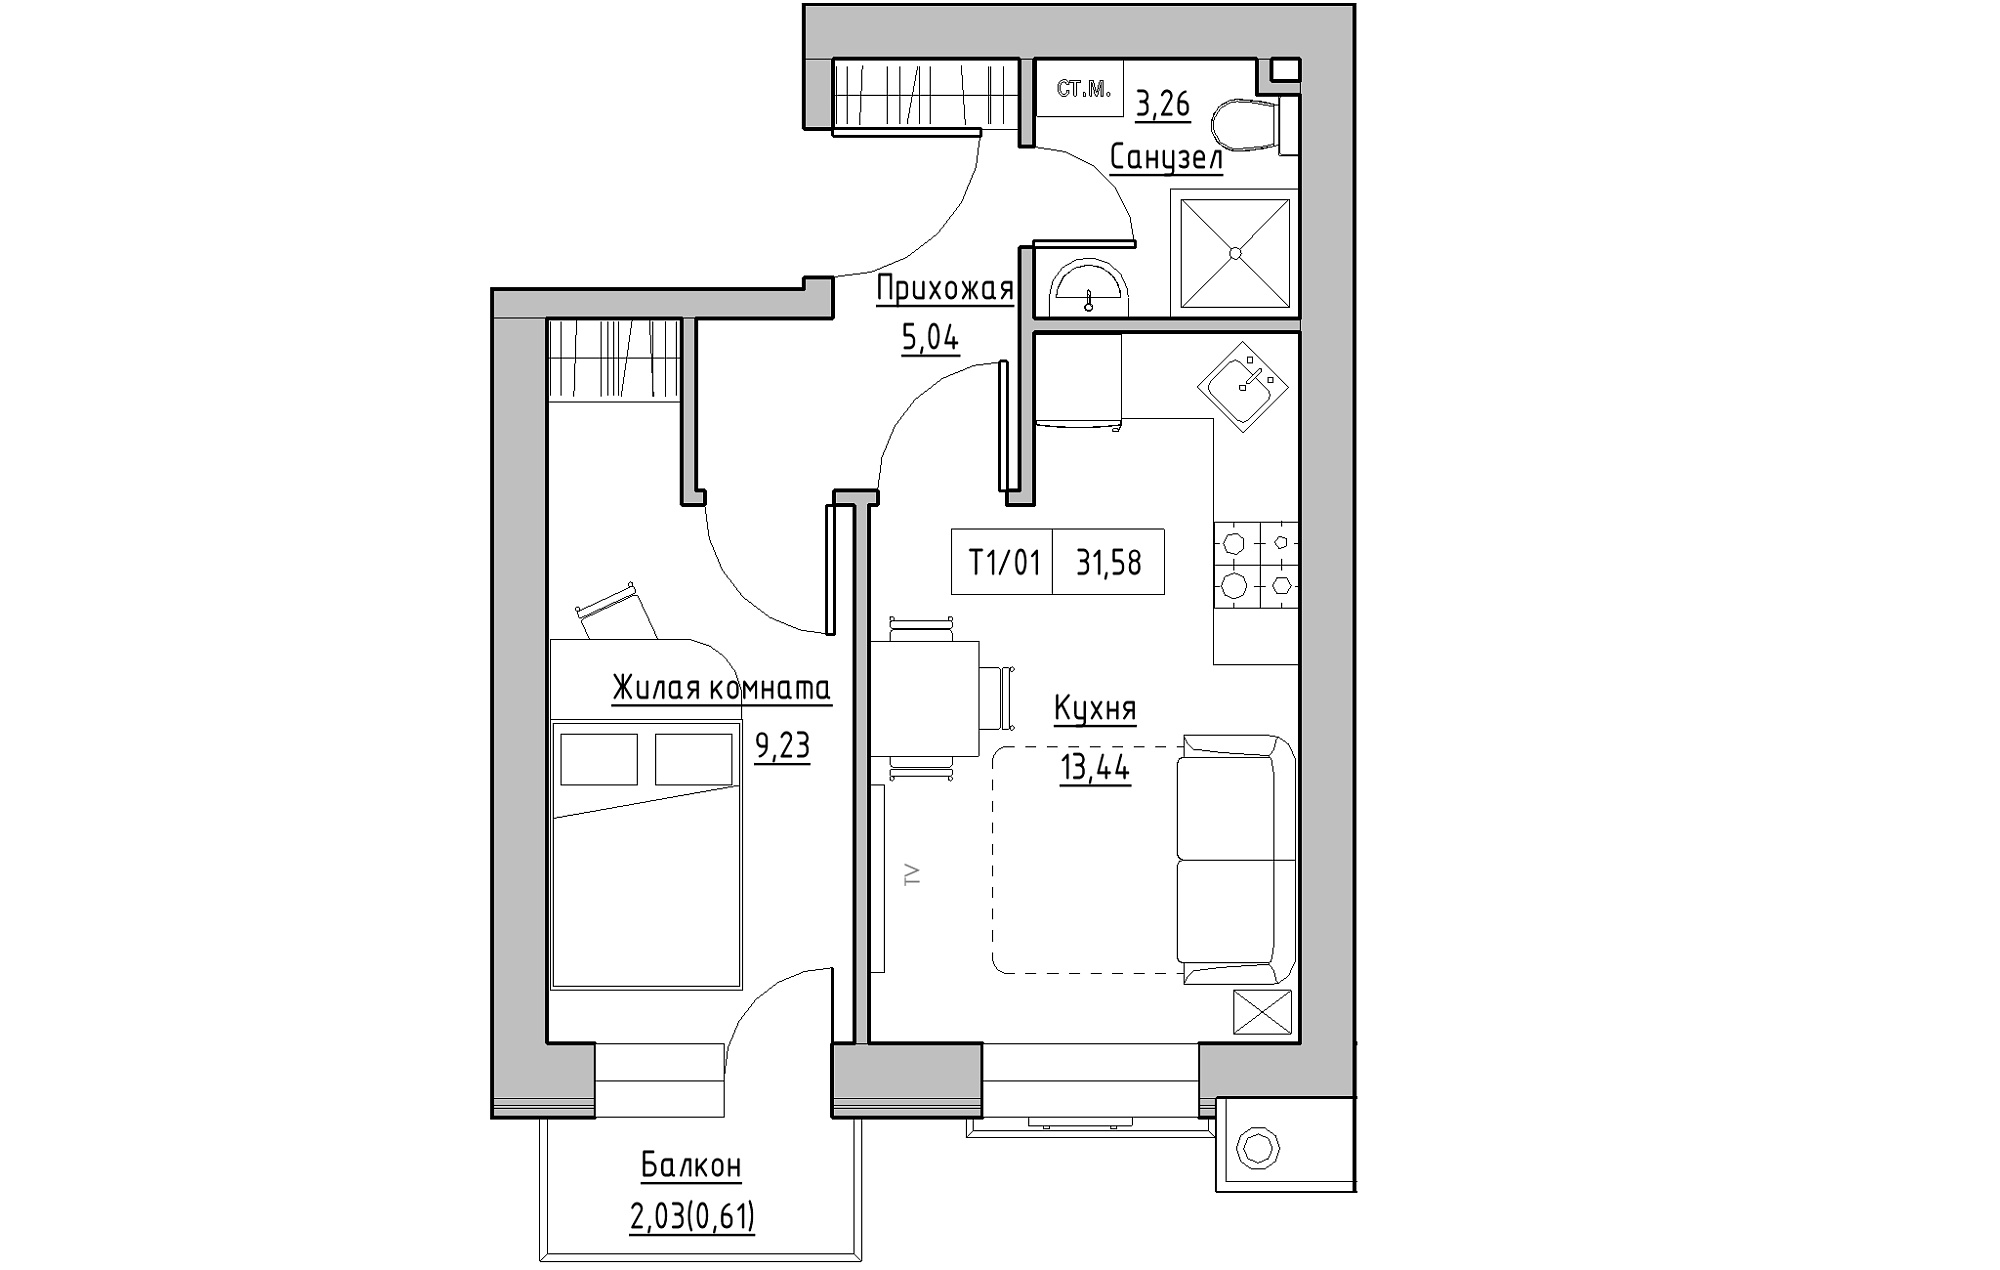 Планування 1-к квартира площею 31.58м2, KS-013-03/0011.